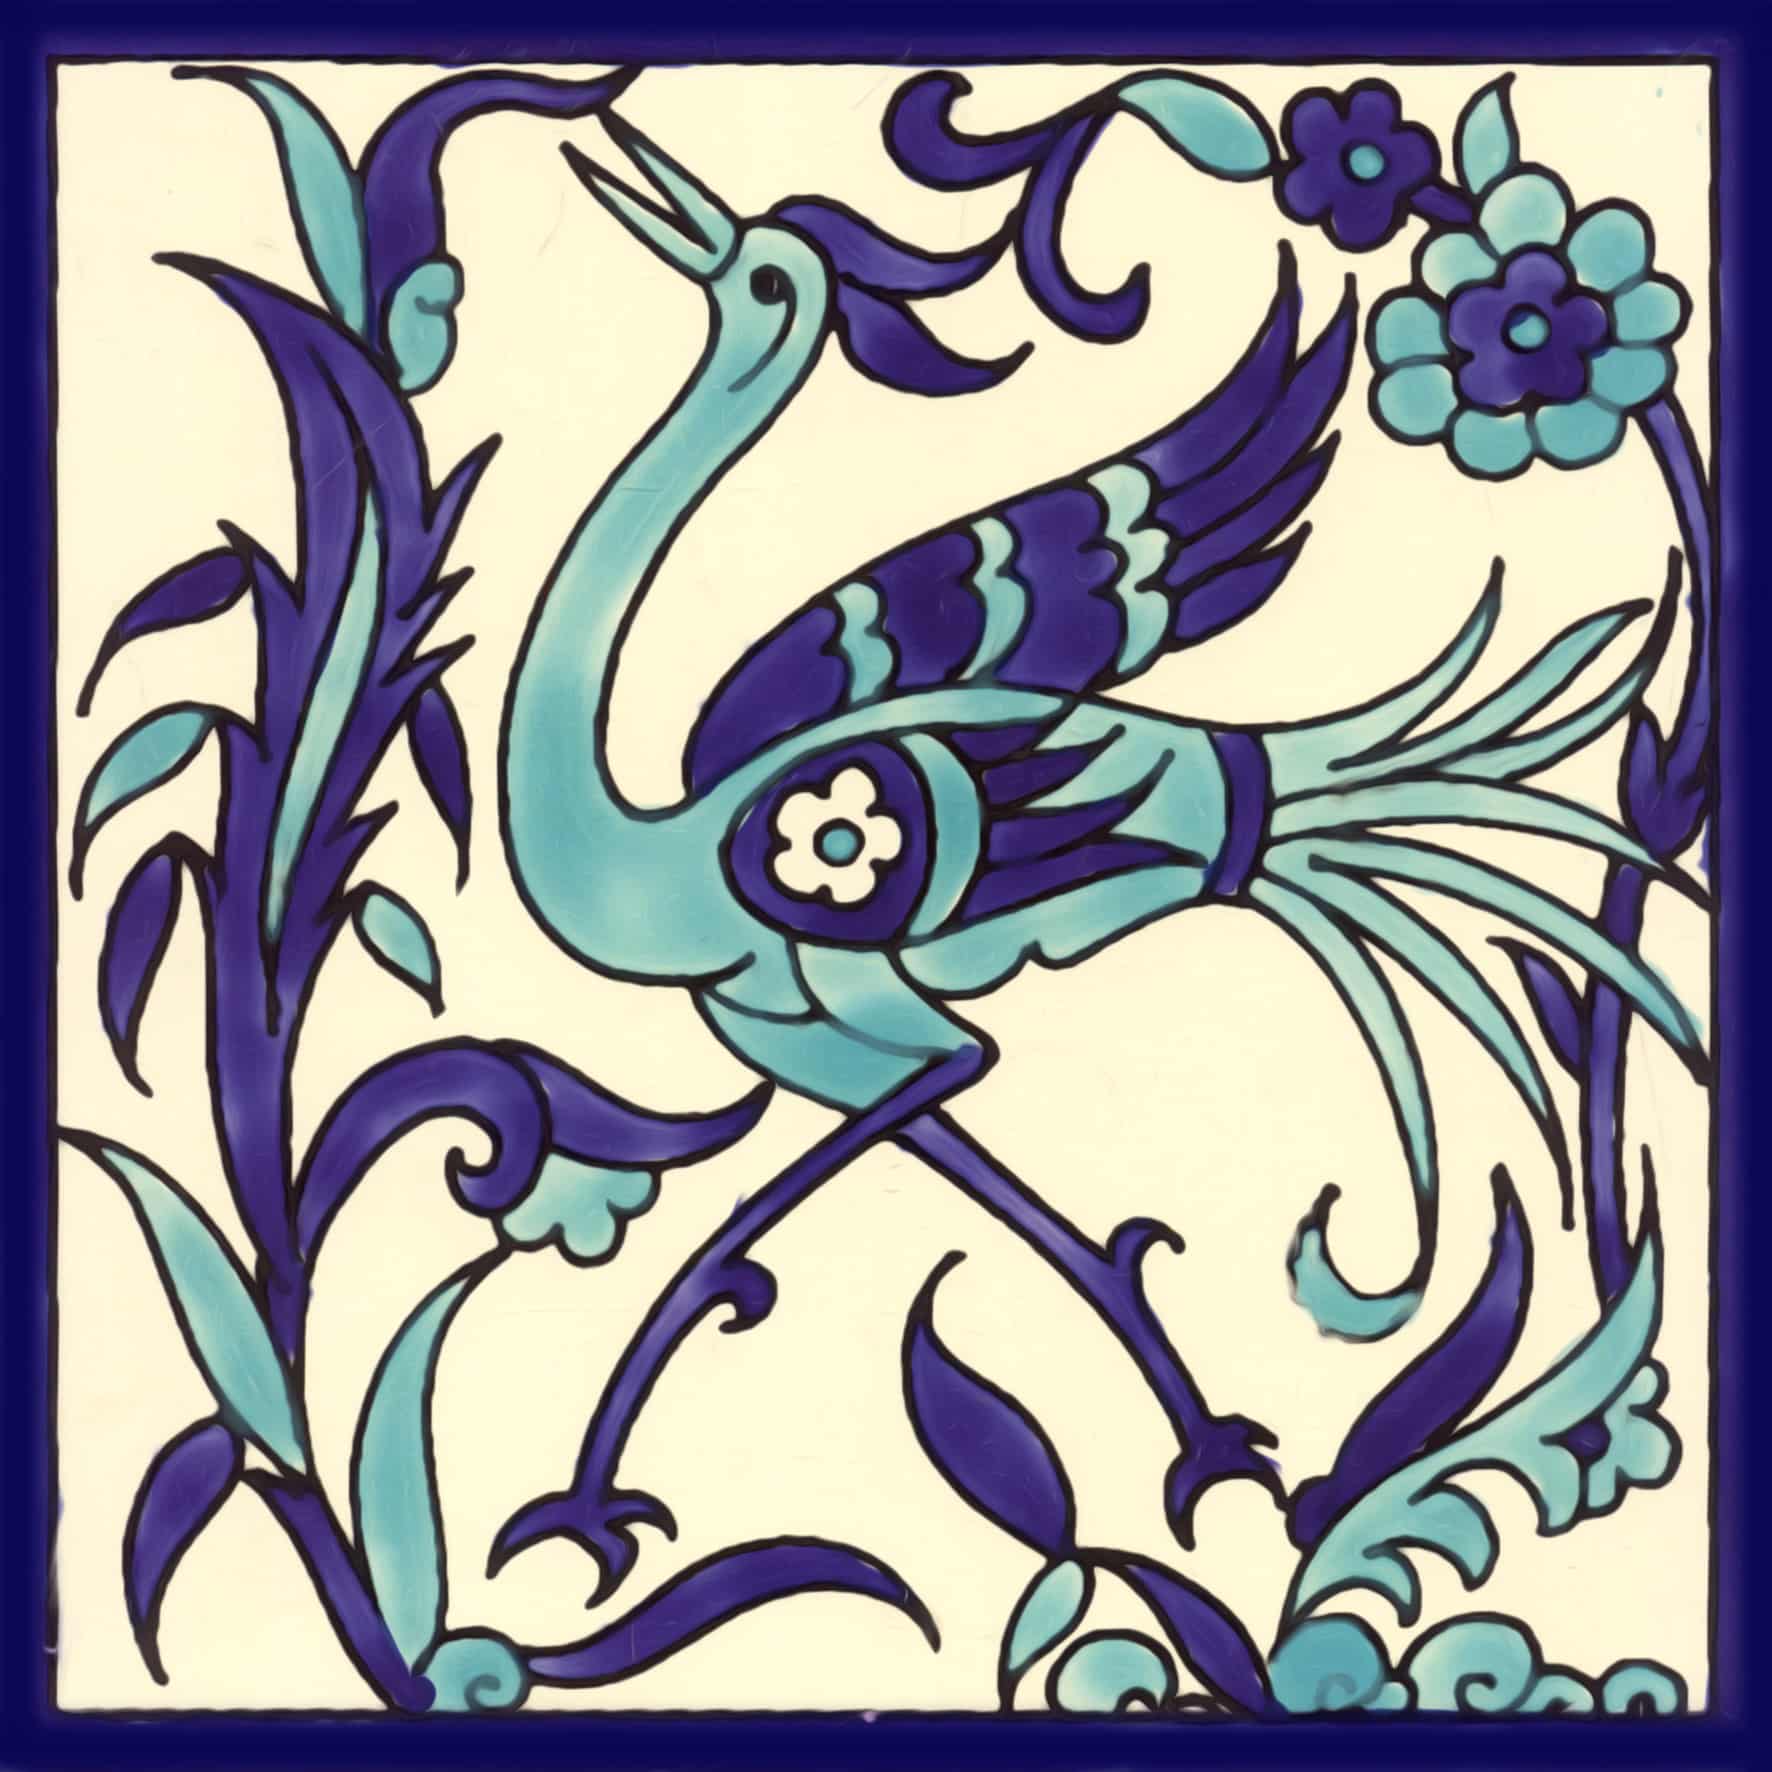 St 6 Peacock blue tile art design